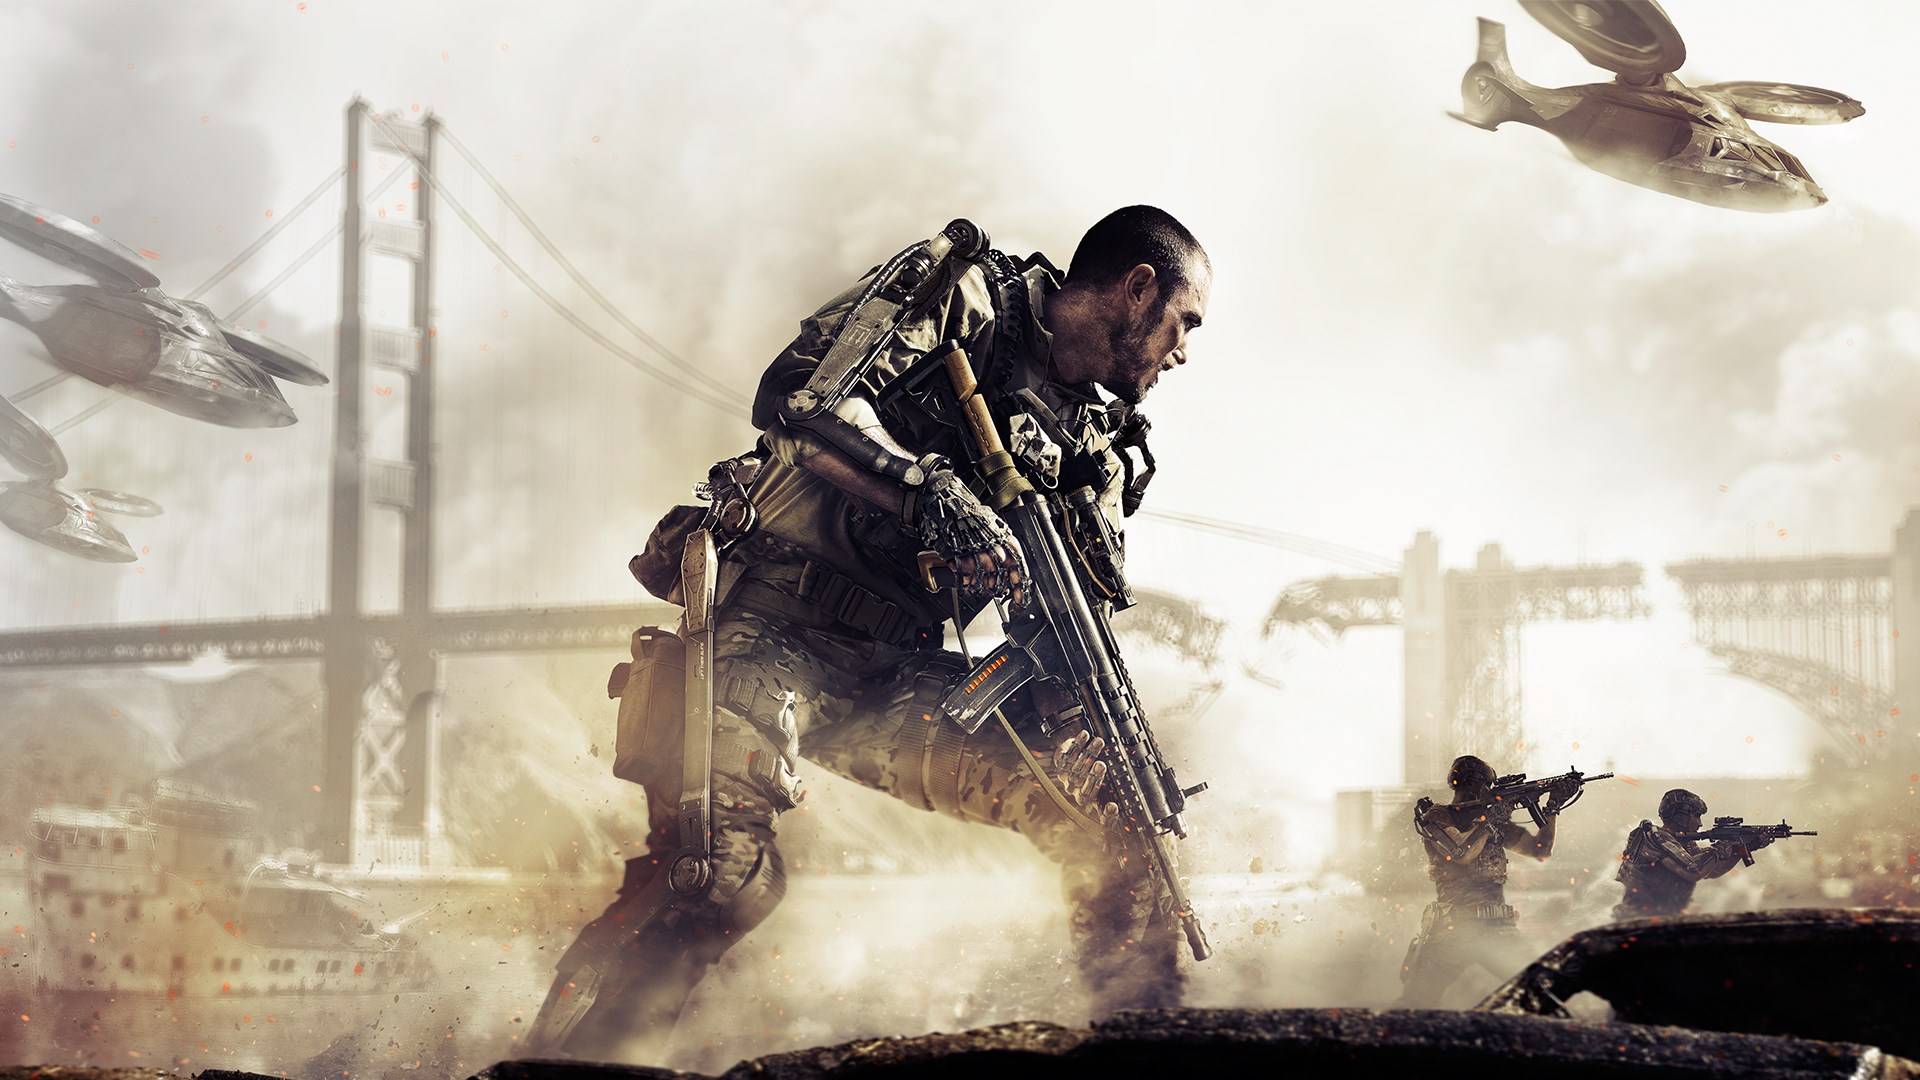 Kevin Spacey fala sobre seu papel em Call of Duty: Advanced